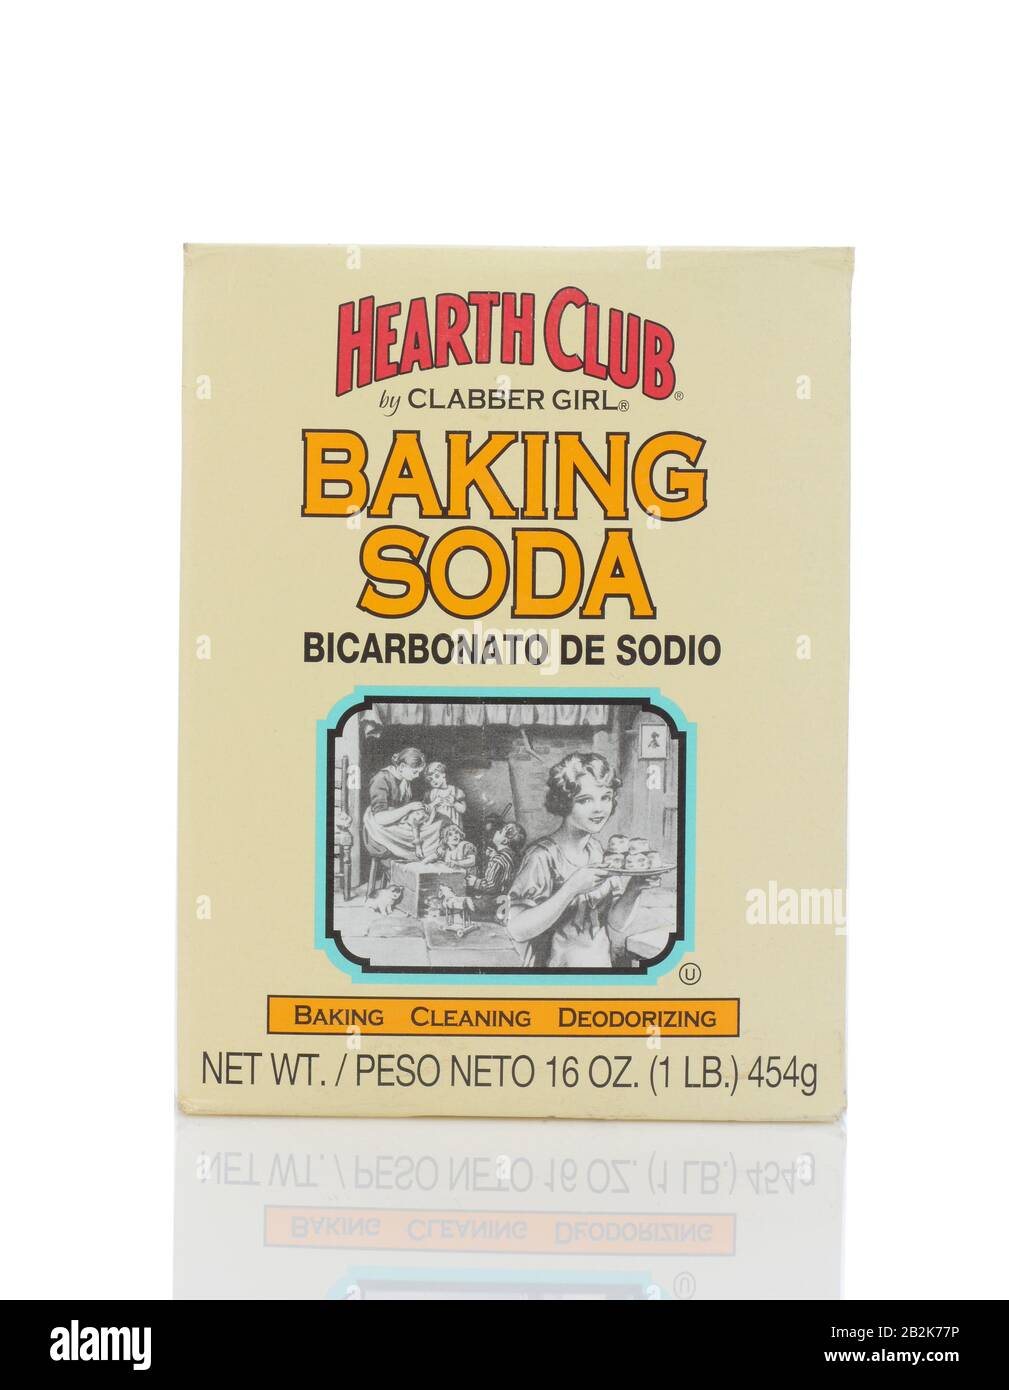 Irvine, CALIFORNIE - 22 MAI 2019: Une boîte de Hoth Club Baking Soda de Clabber Girl. Le bicarbonate de sodium est utilisé pour la cuisson, le nettoyage et la désodorizine Banque D'Images